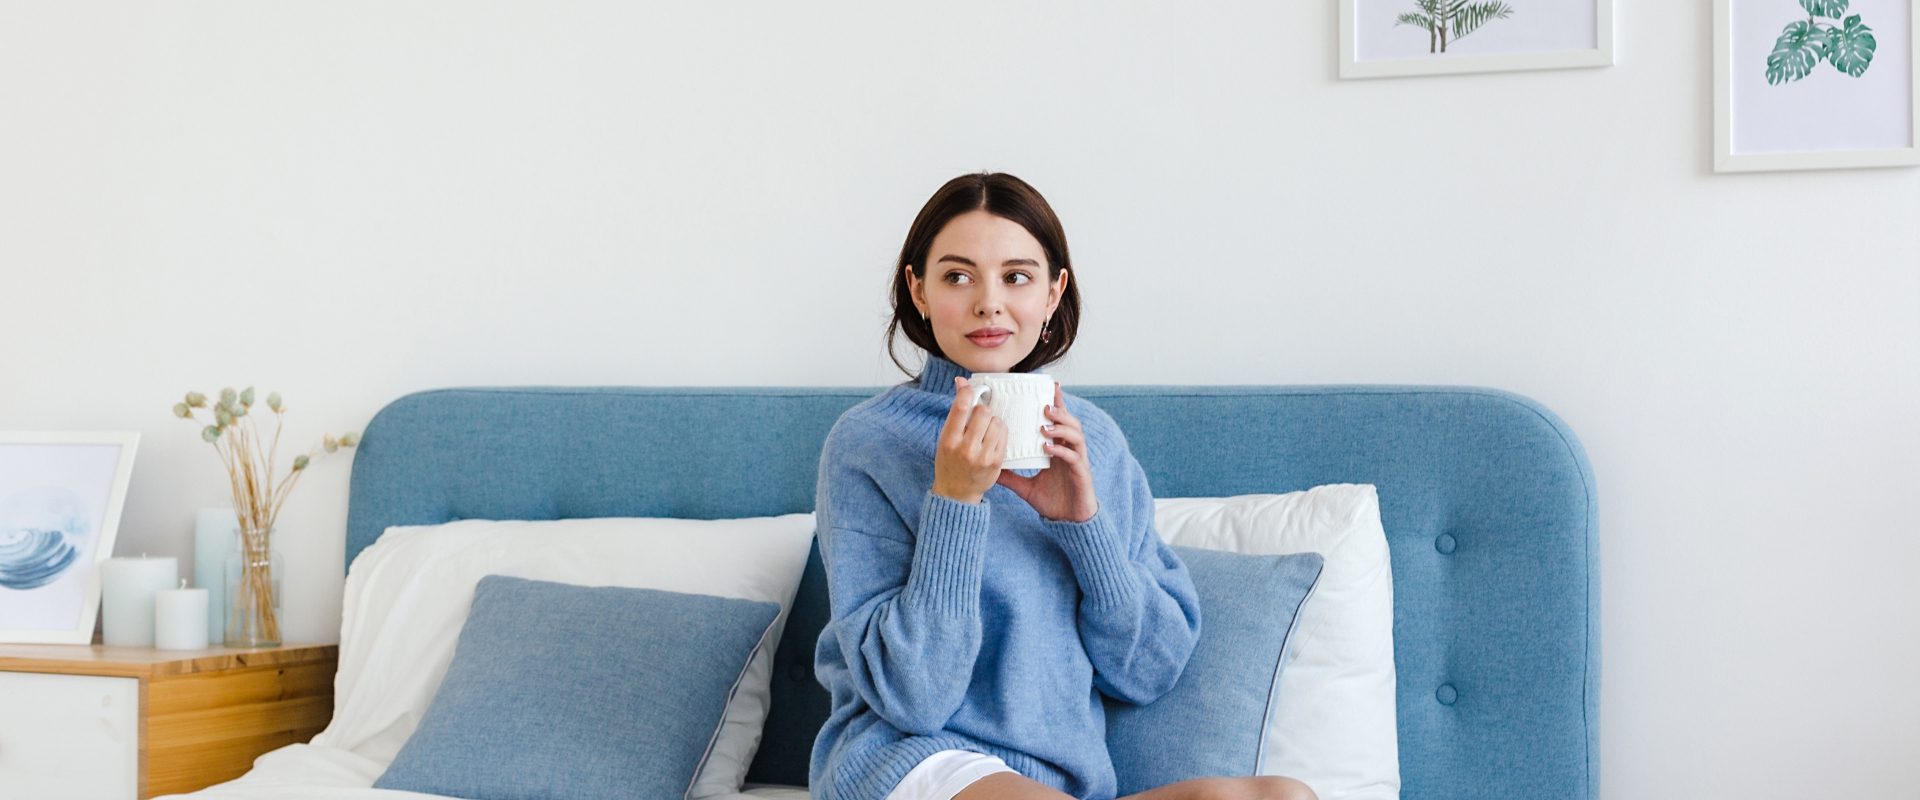 Jakie czynniki obniżają odporność? Kobieta w niebieskim swetrze siedzi na łóżku i pije gorącą herbatę.